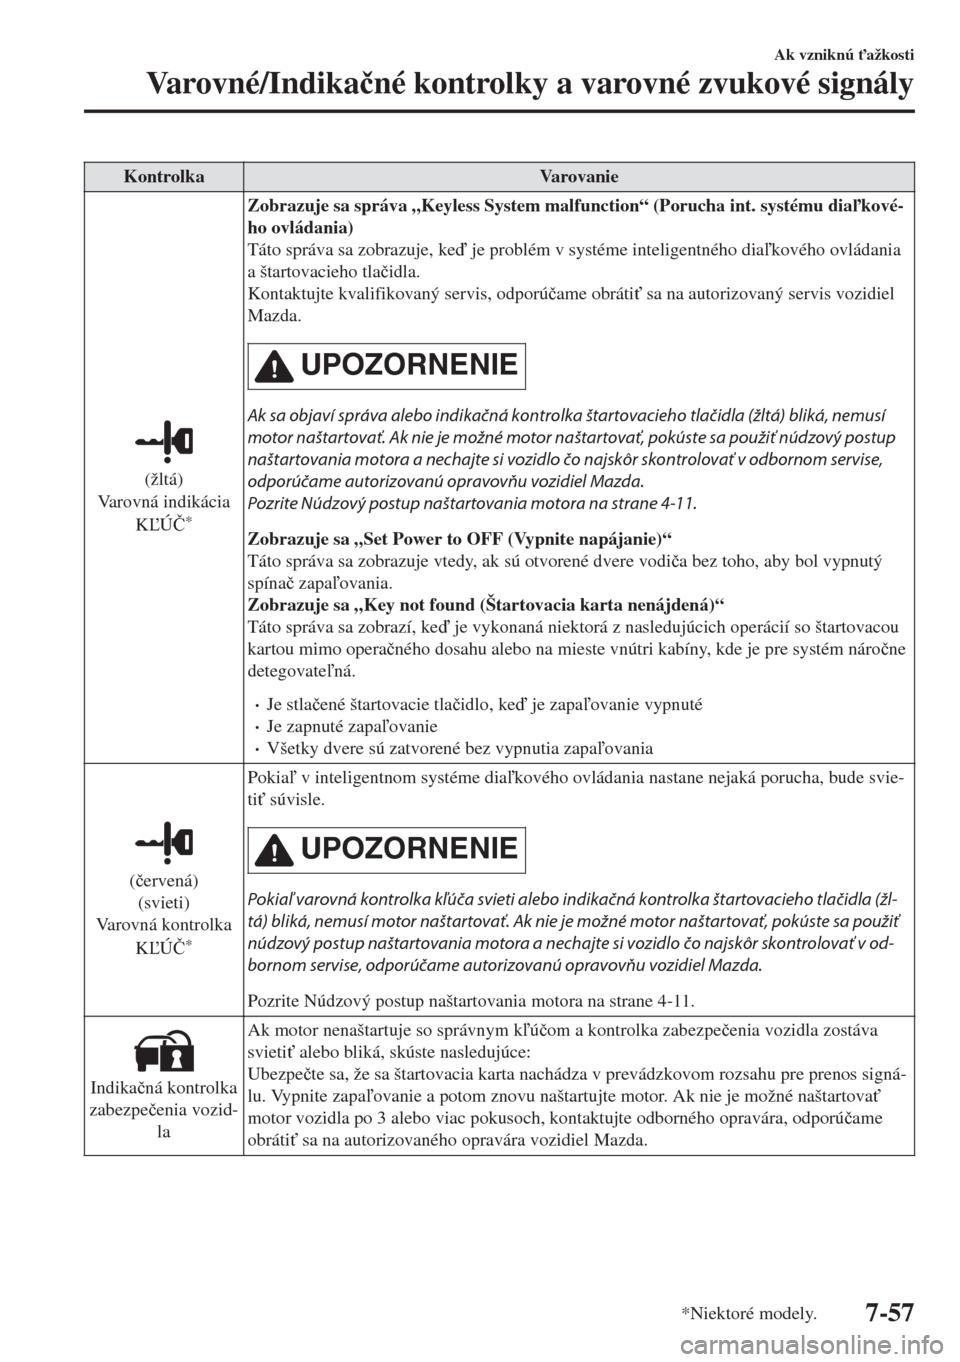 MAZDA MODEL 6 2018  Užívateľská príručka (in Slovak) Kontrolka Varovanie
(žltá)
Varovná indikácia
KÚ�ý
*
Zobrazuje sa správa „Keyless System malfunction“ (Porucha int. systému diakové-
ho ovládania)
Táto správa sa zobrazuje, ke je 